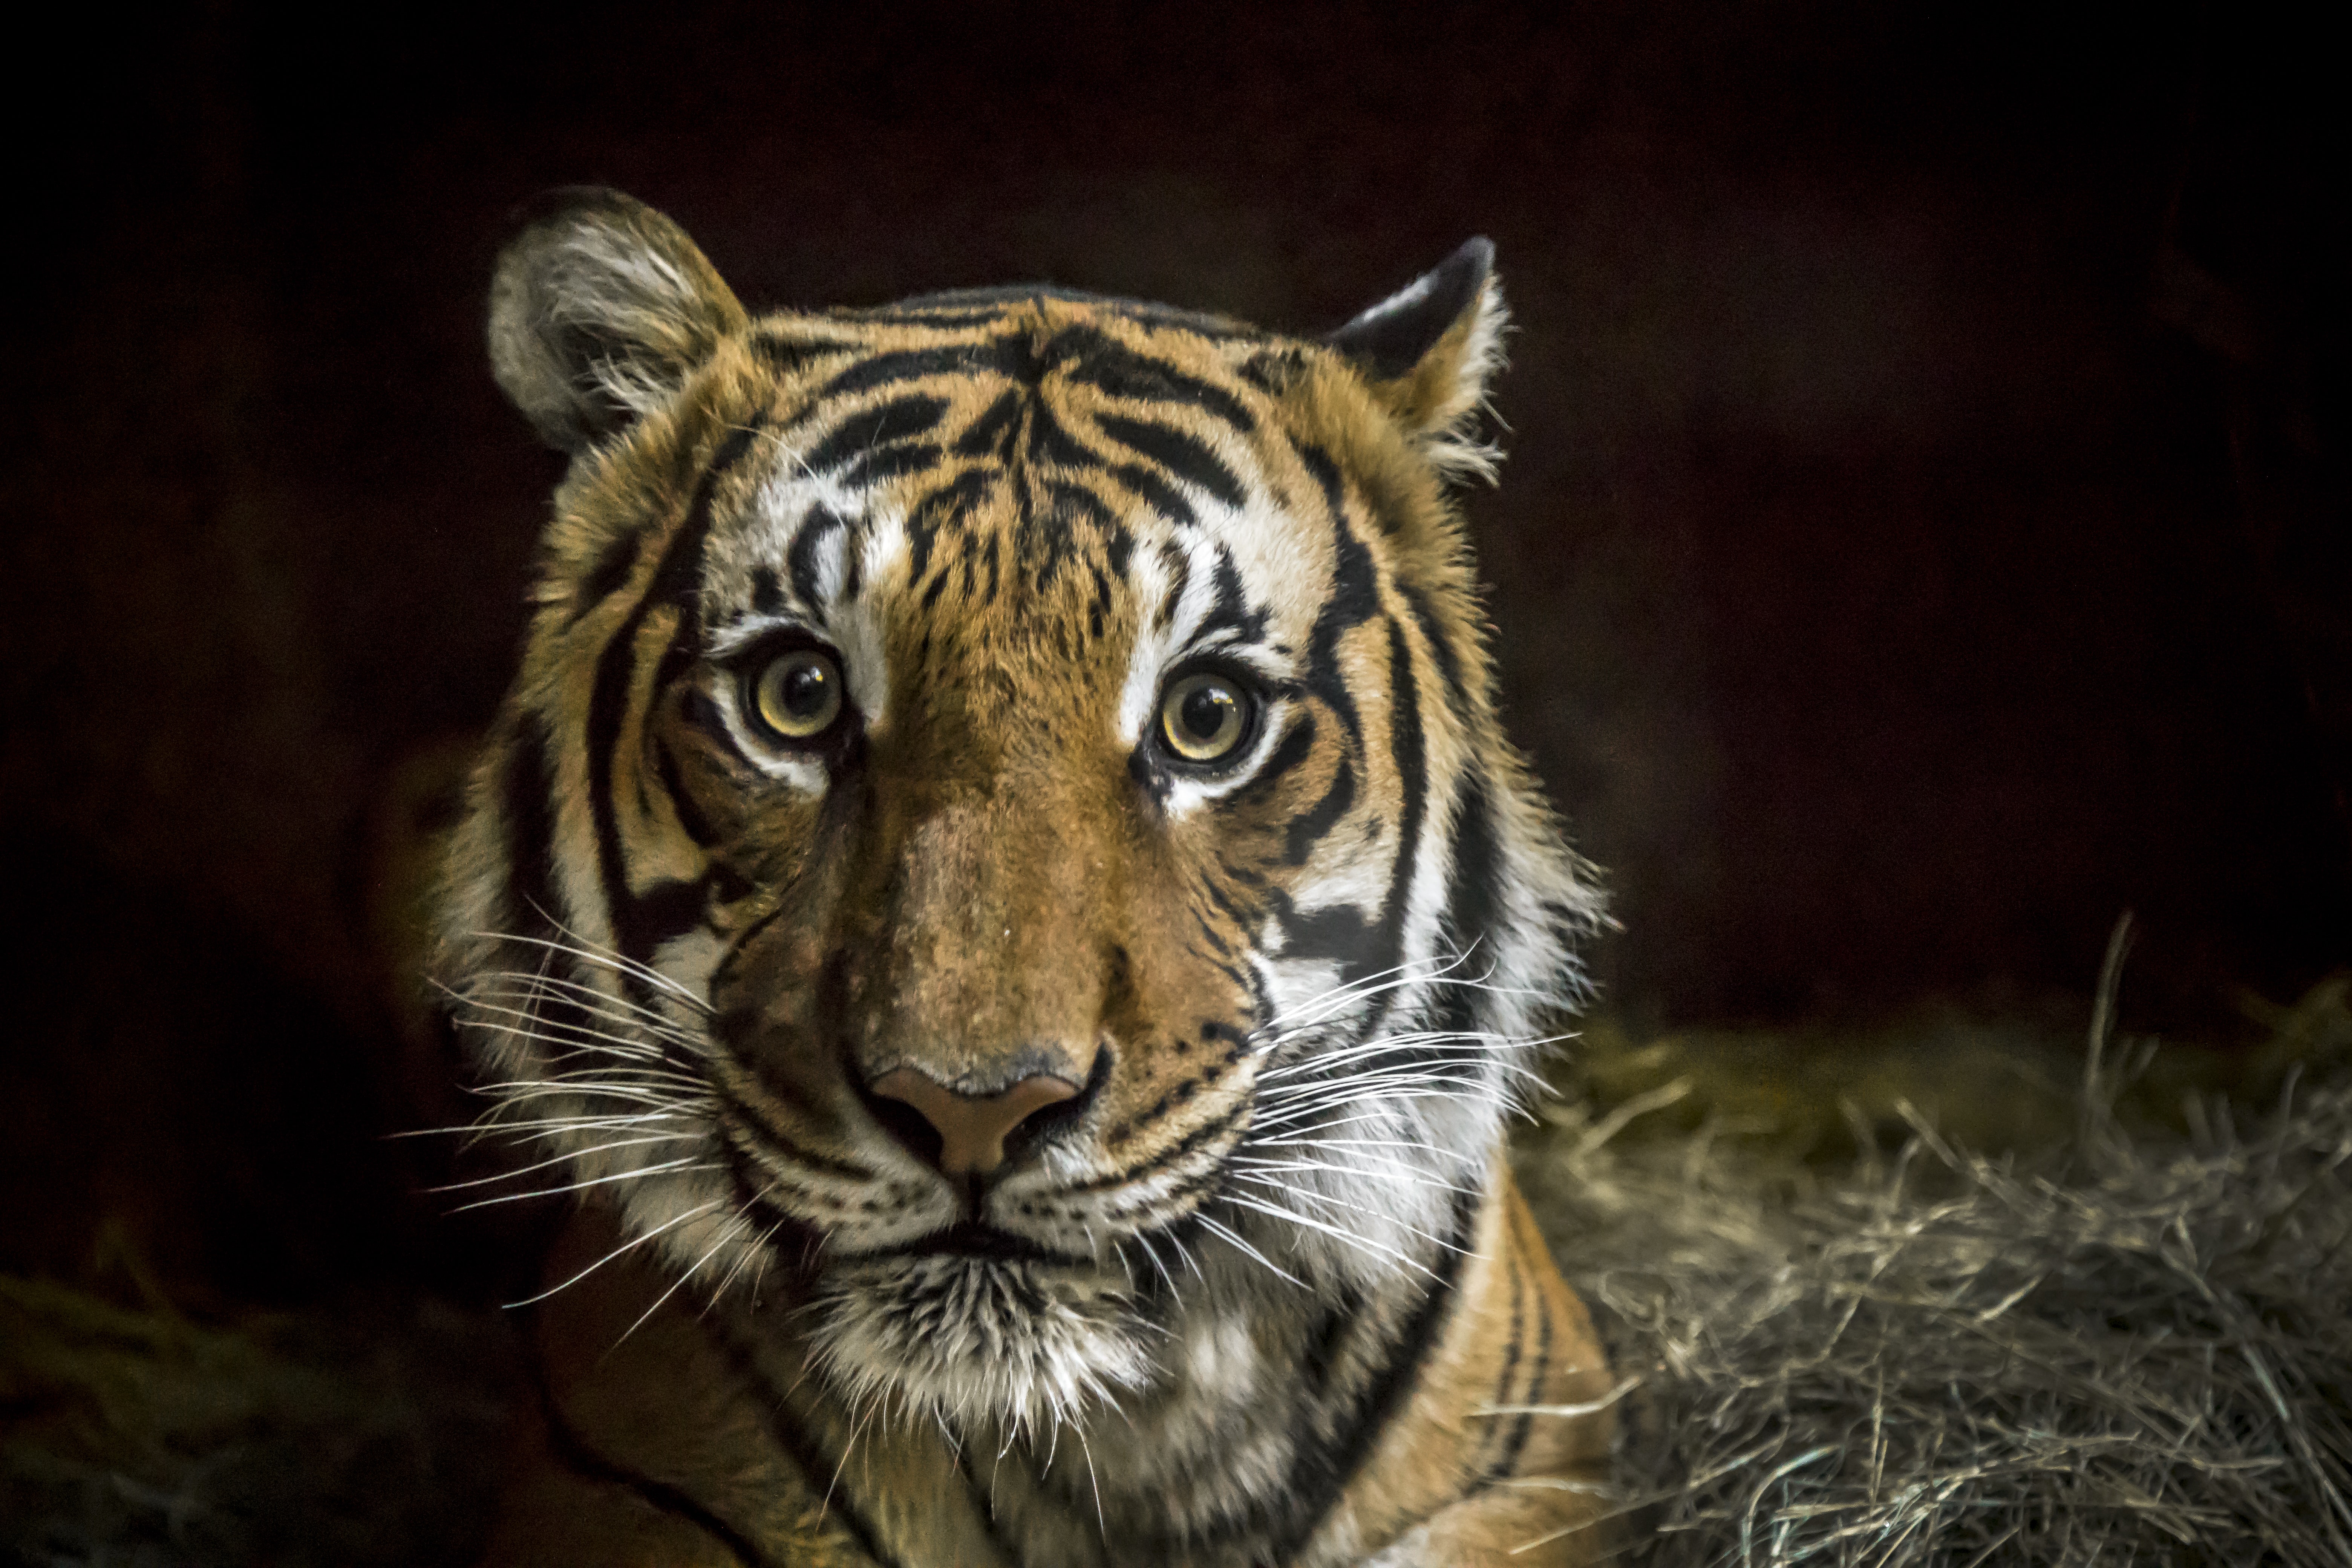 tiger tapete,tiger,tierwelt,landtier,bengalischer tiger,schnurrhaare